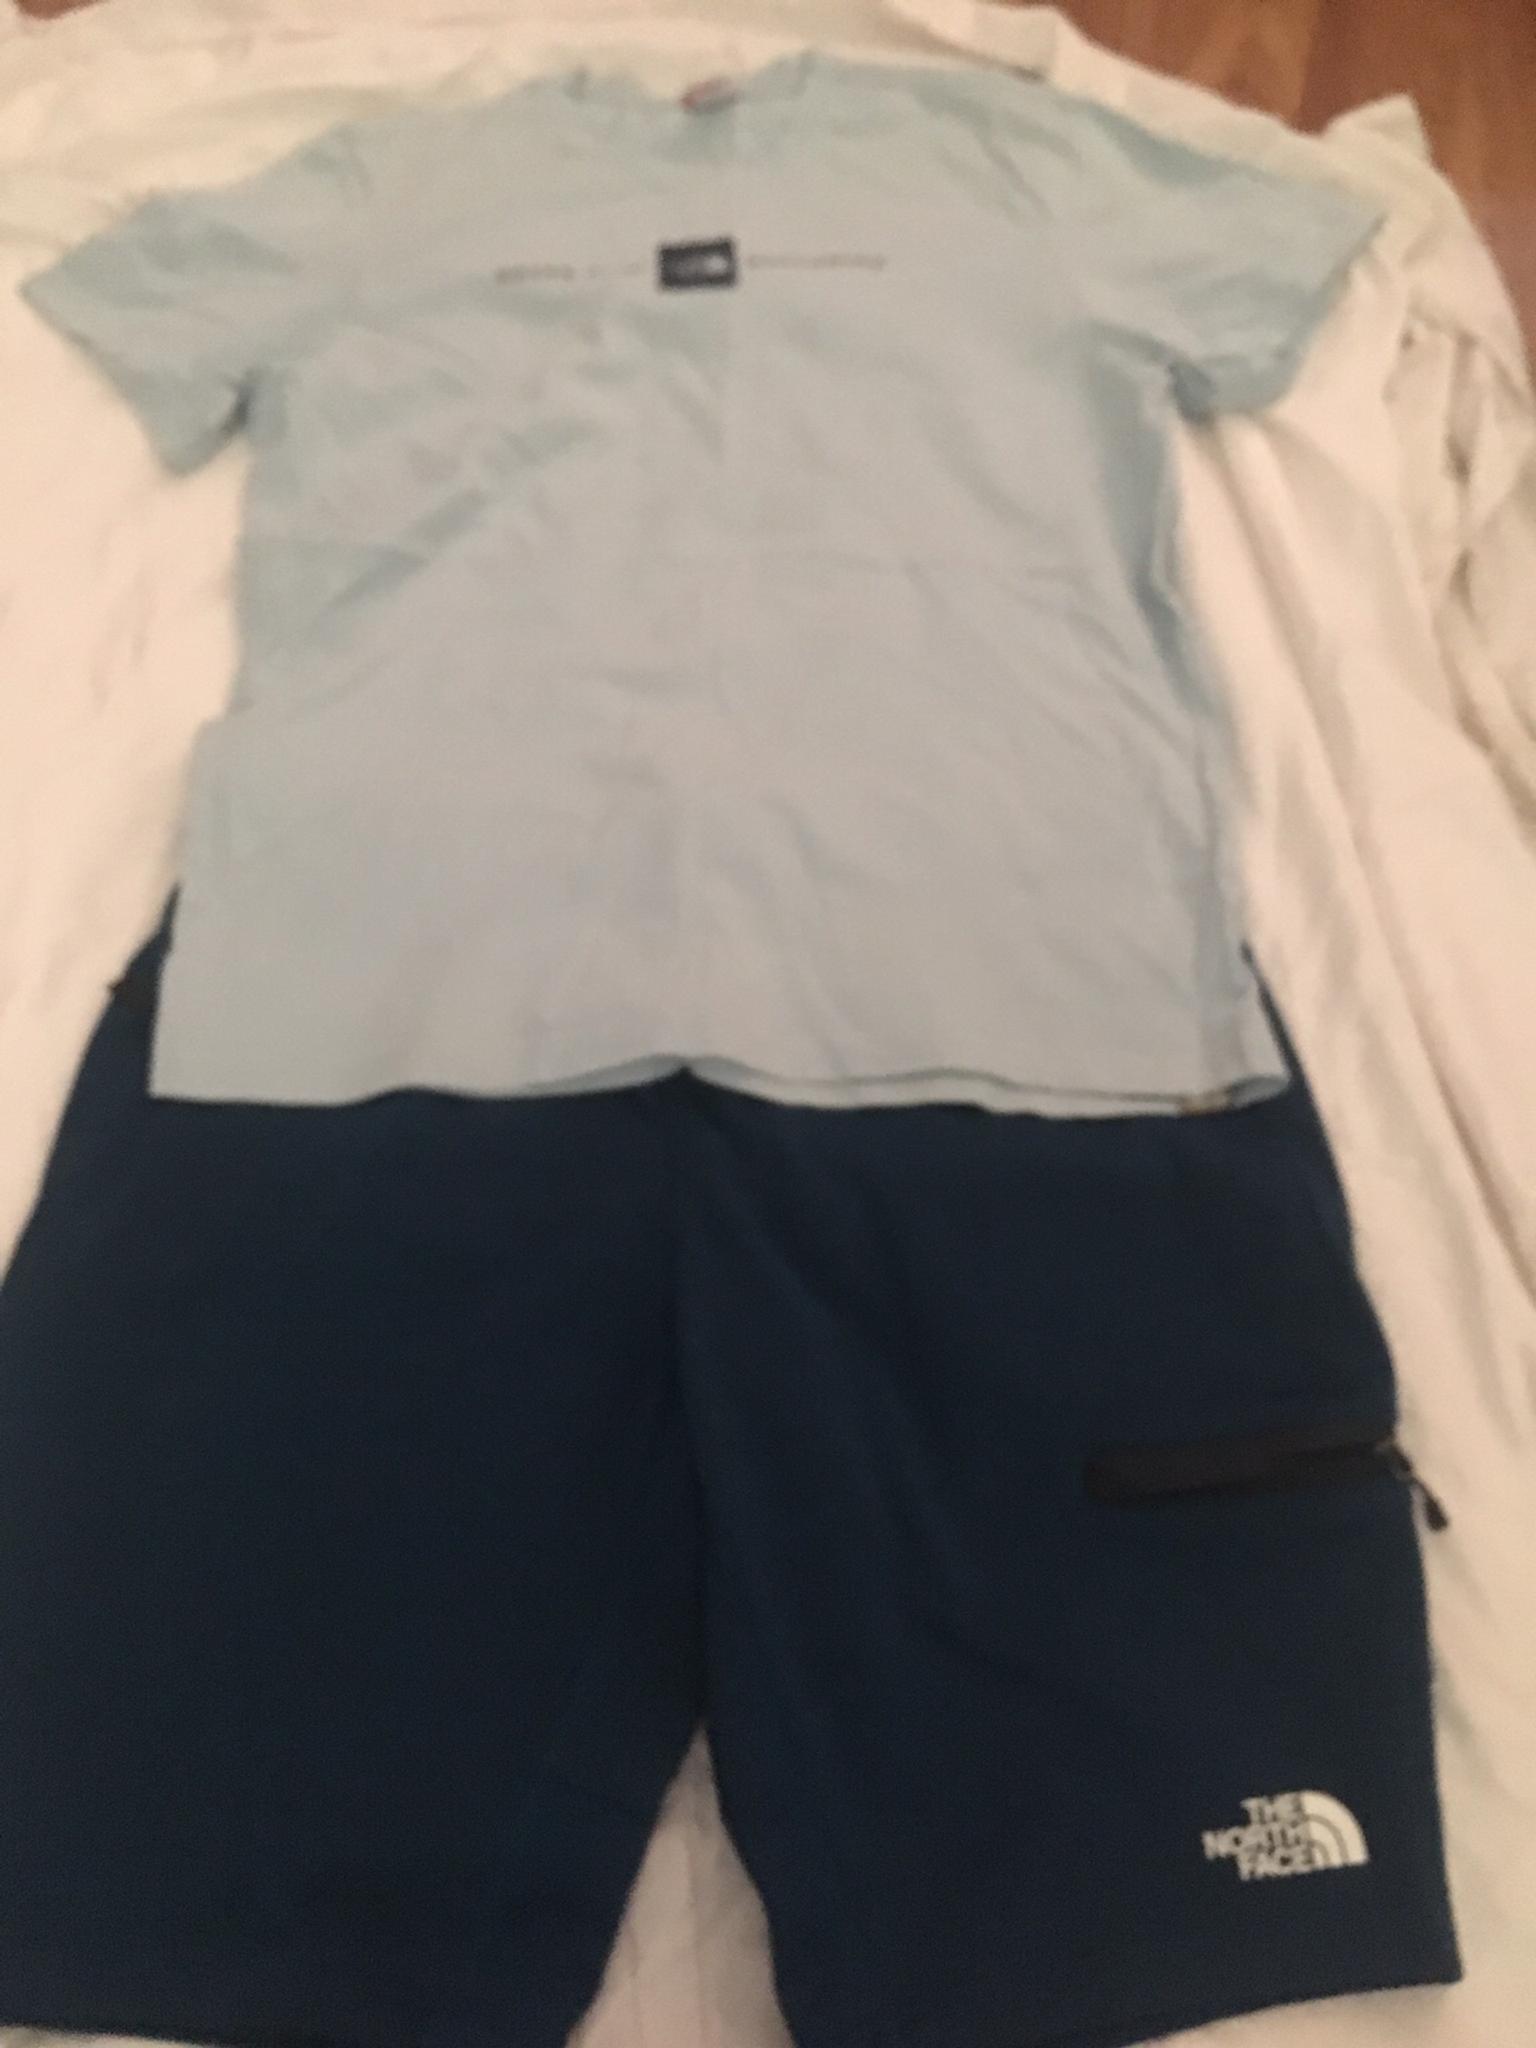 Men's North face shorts and T-shirt set 